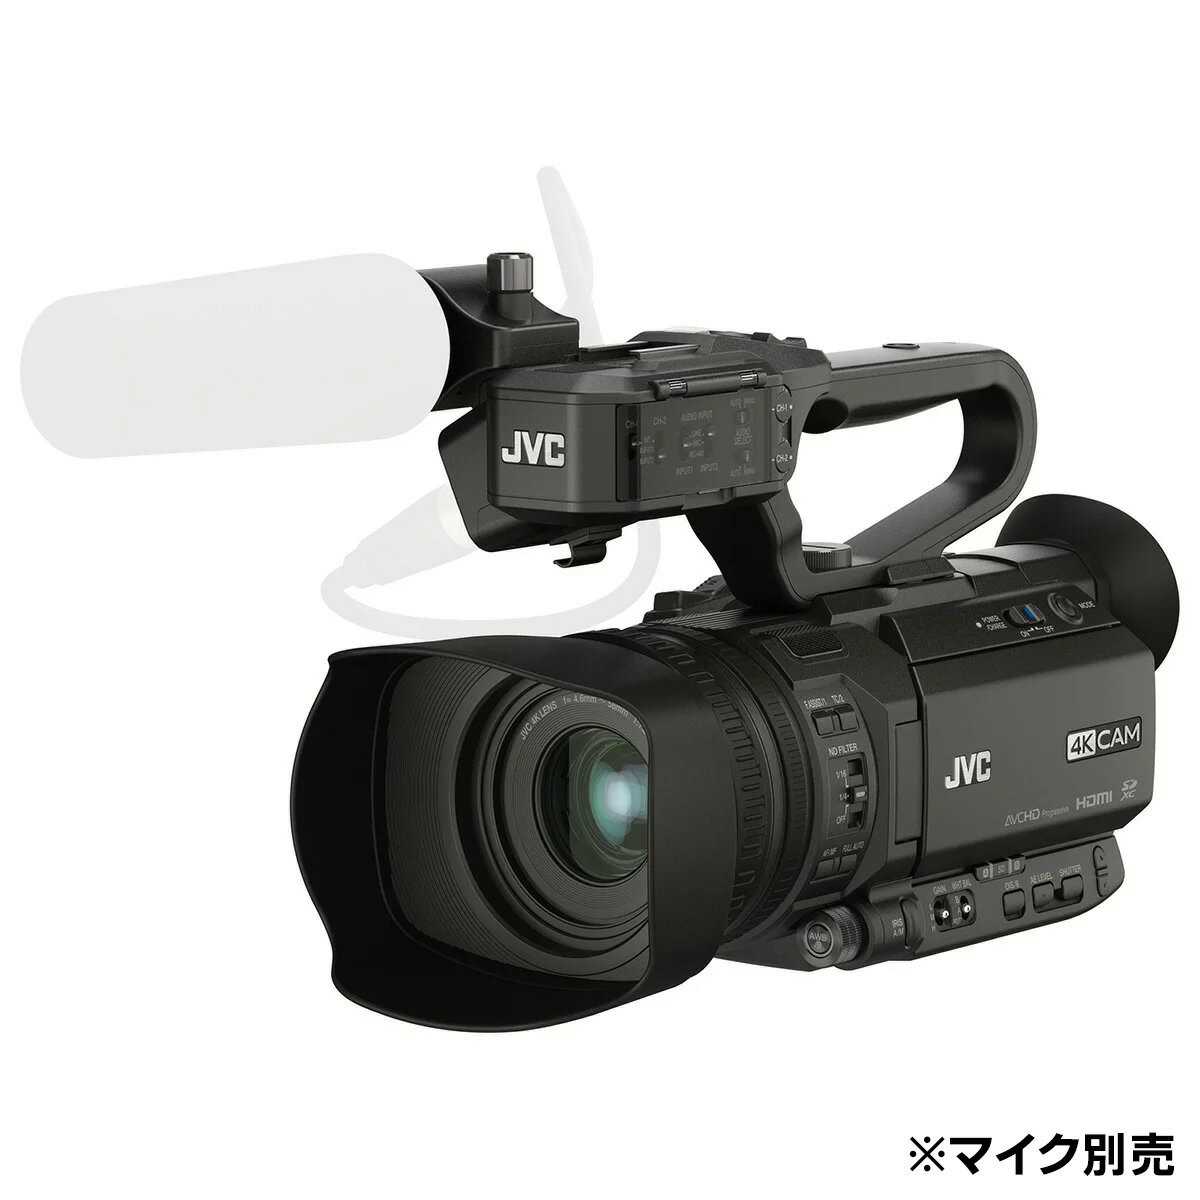 メーカー JVC（ジェイブイシー） タイプ ハンディカメラ（レンズ一体型） 最高記録画素数 3840×2160 センサー 1/2.3型 CMOS 開放F値 F1.2～F3.5 光学ズーム 12倍 重量 約1.5kg（バッテリー装着） 外形寸...